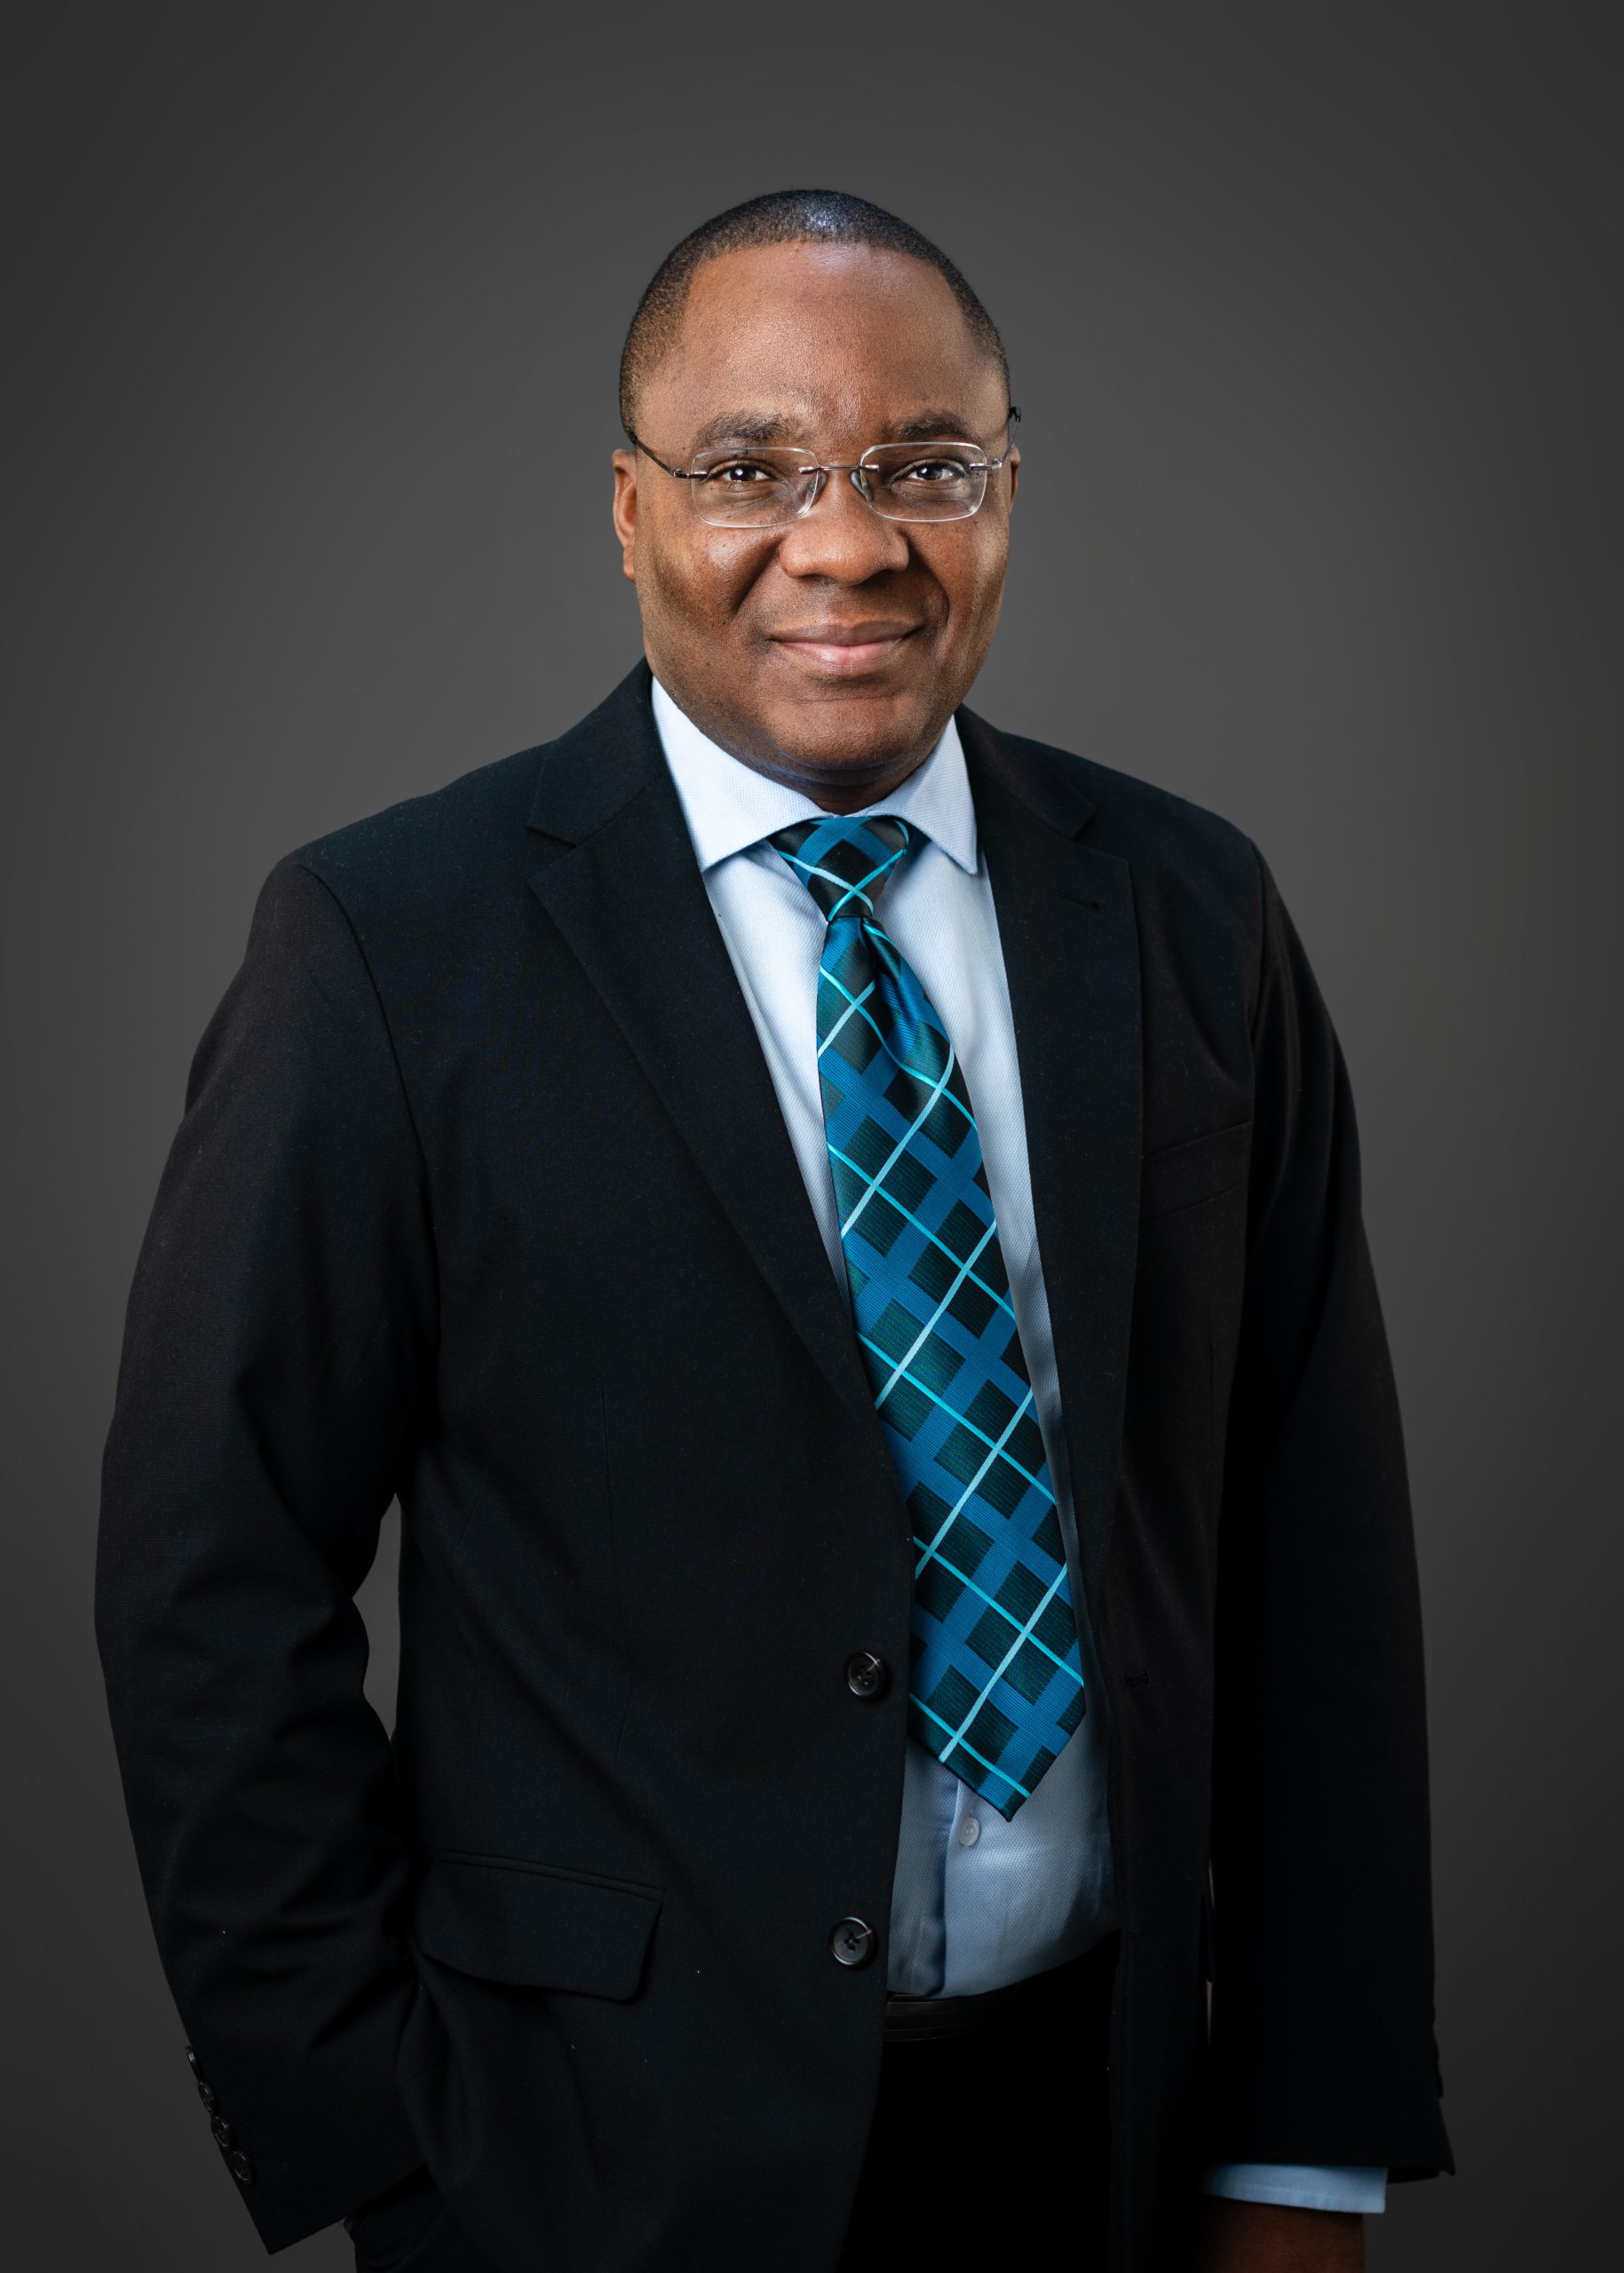 Mr. Sakaria Nghikembua